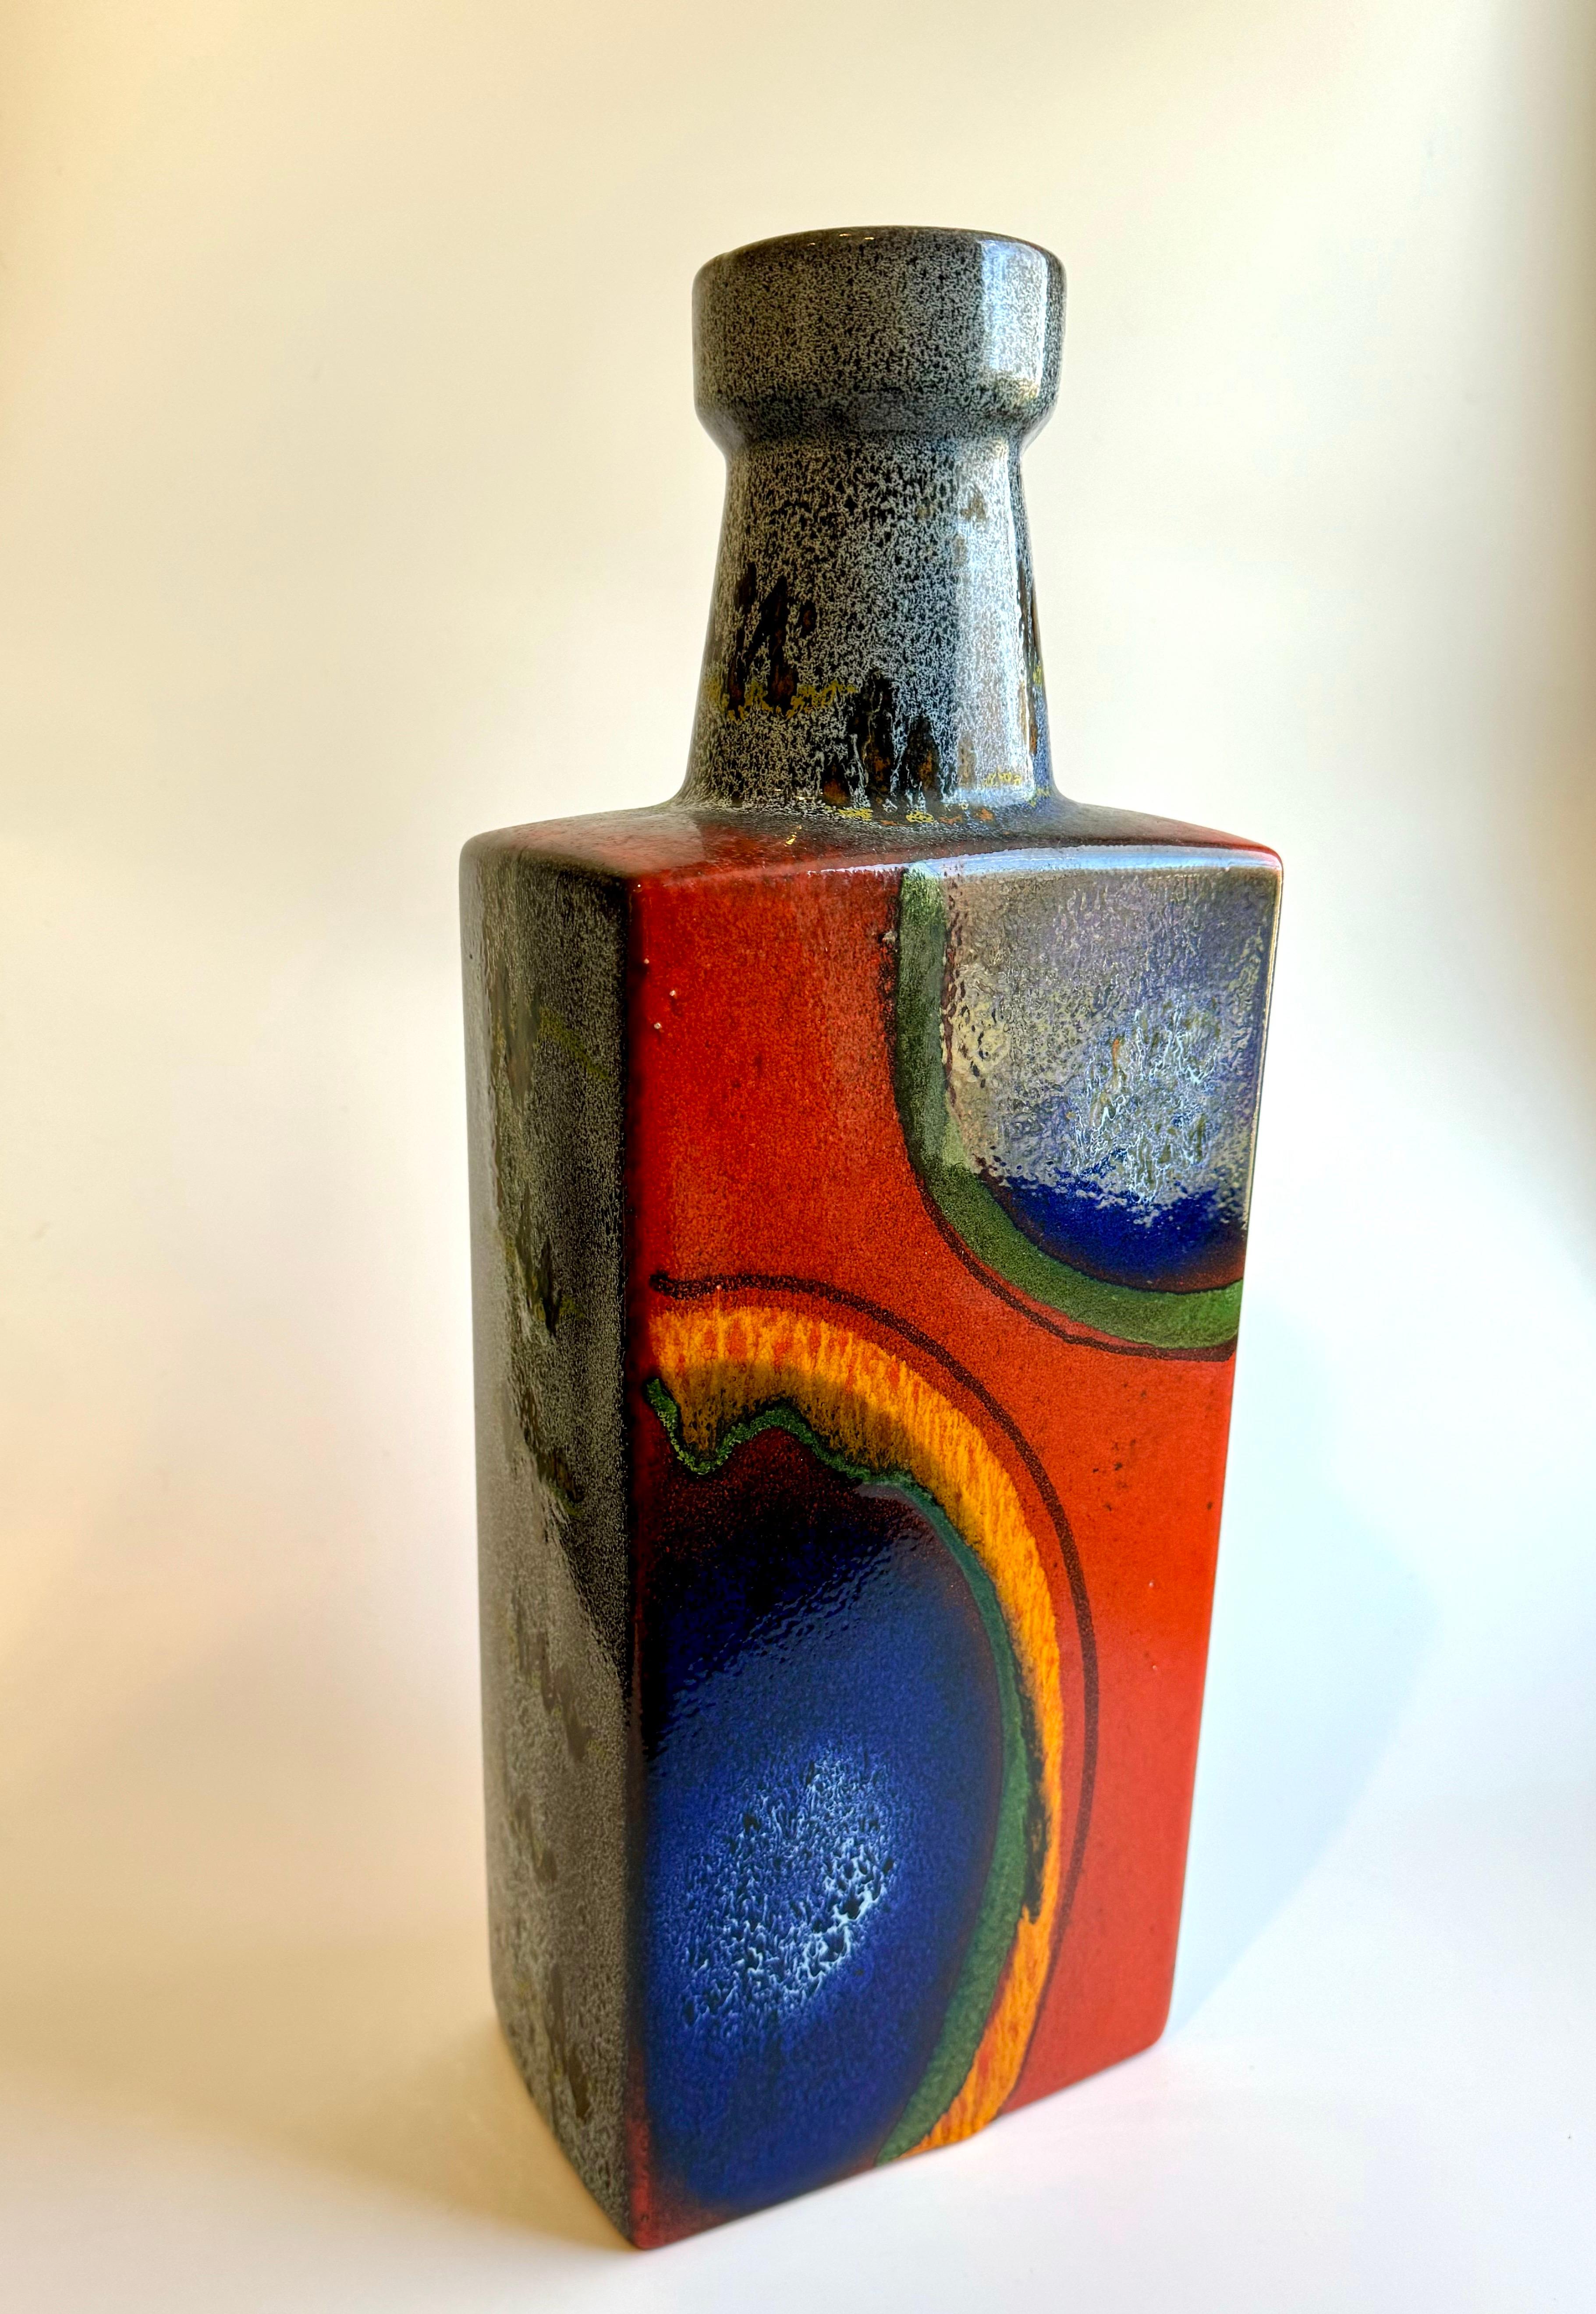 Es handelt sich um eine große westdeutsche Vase der Firma Scheurich Keramik, die Mitte des 20. Jahrhunderts zu den größten Keramikherstellern gehörte. Die Vase hat eine unverwechselbare Glasur mit einer kräftigen Farbpalette, die Orange, Blau und